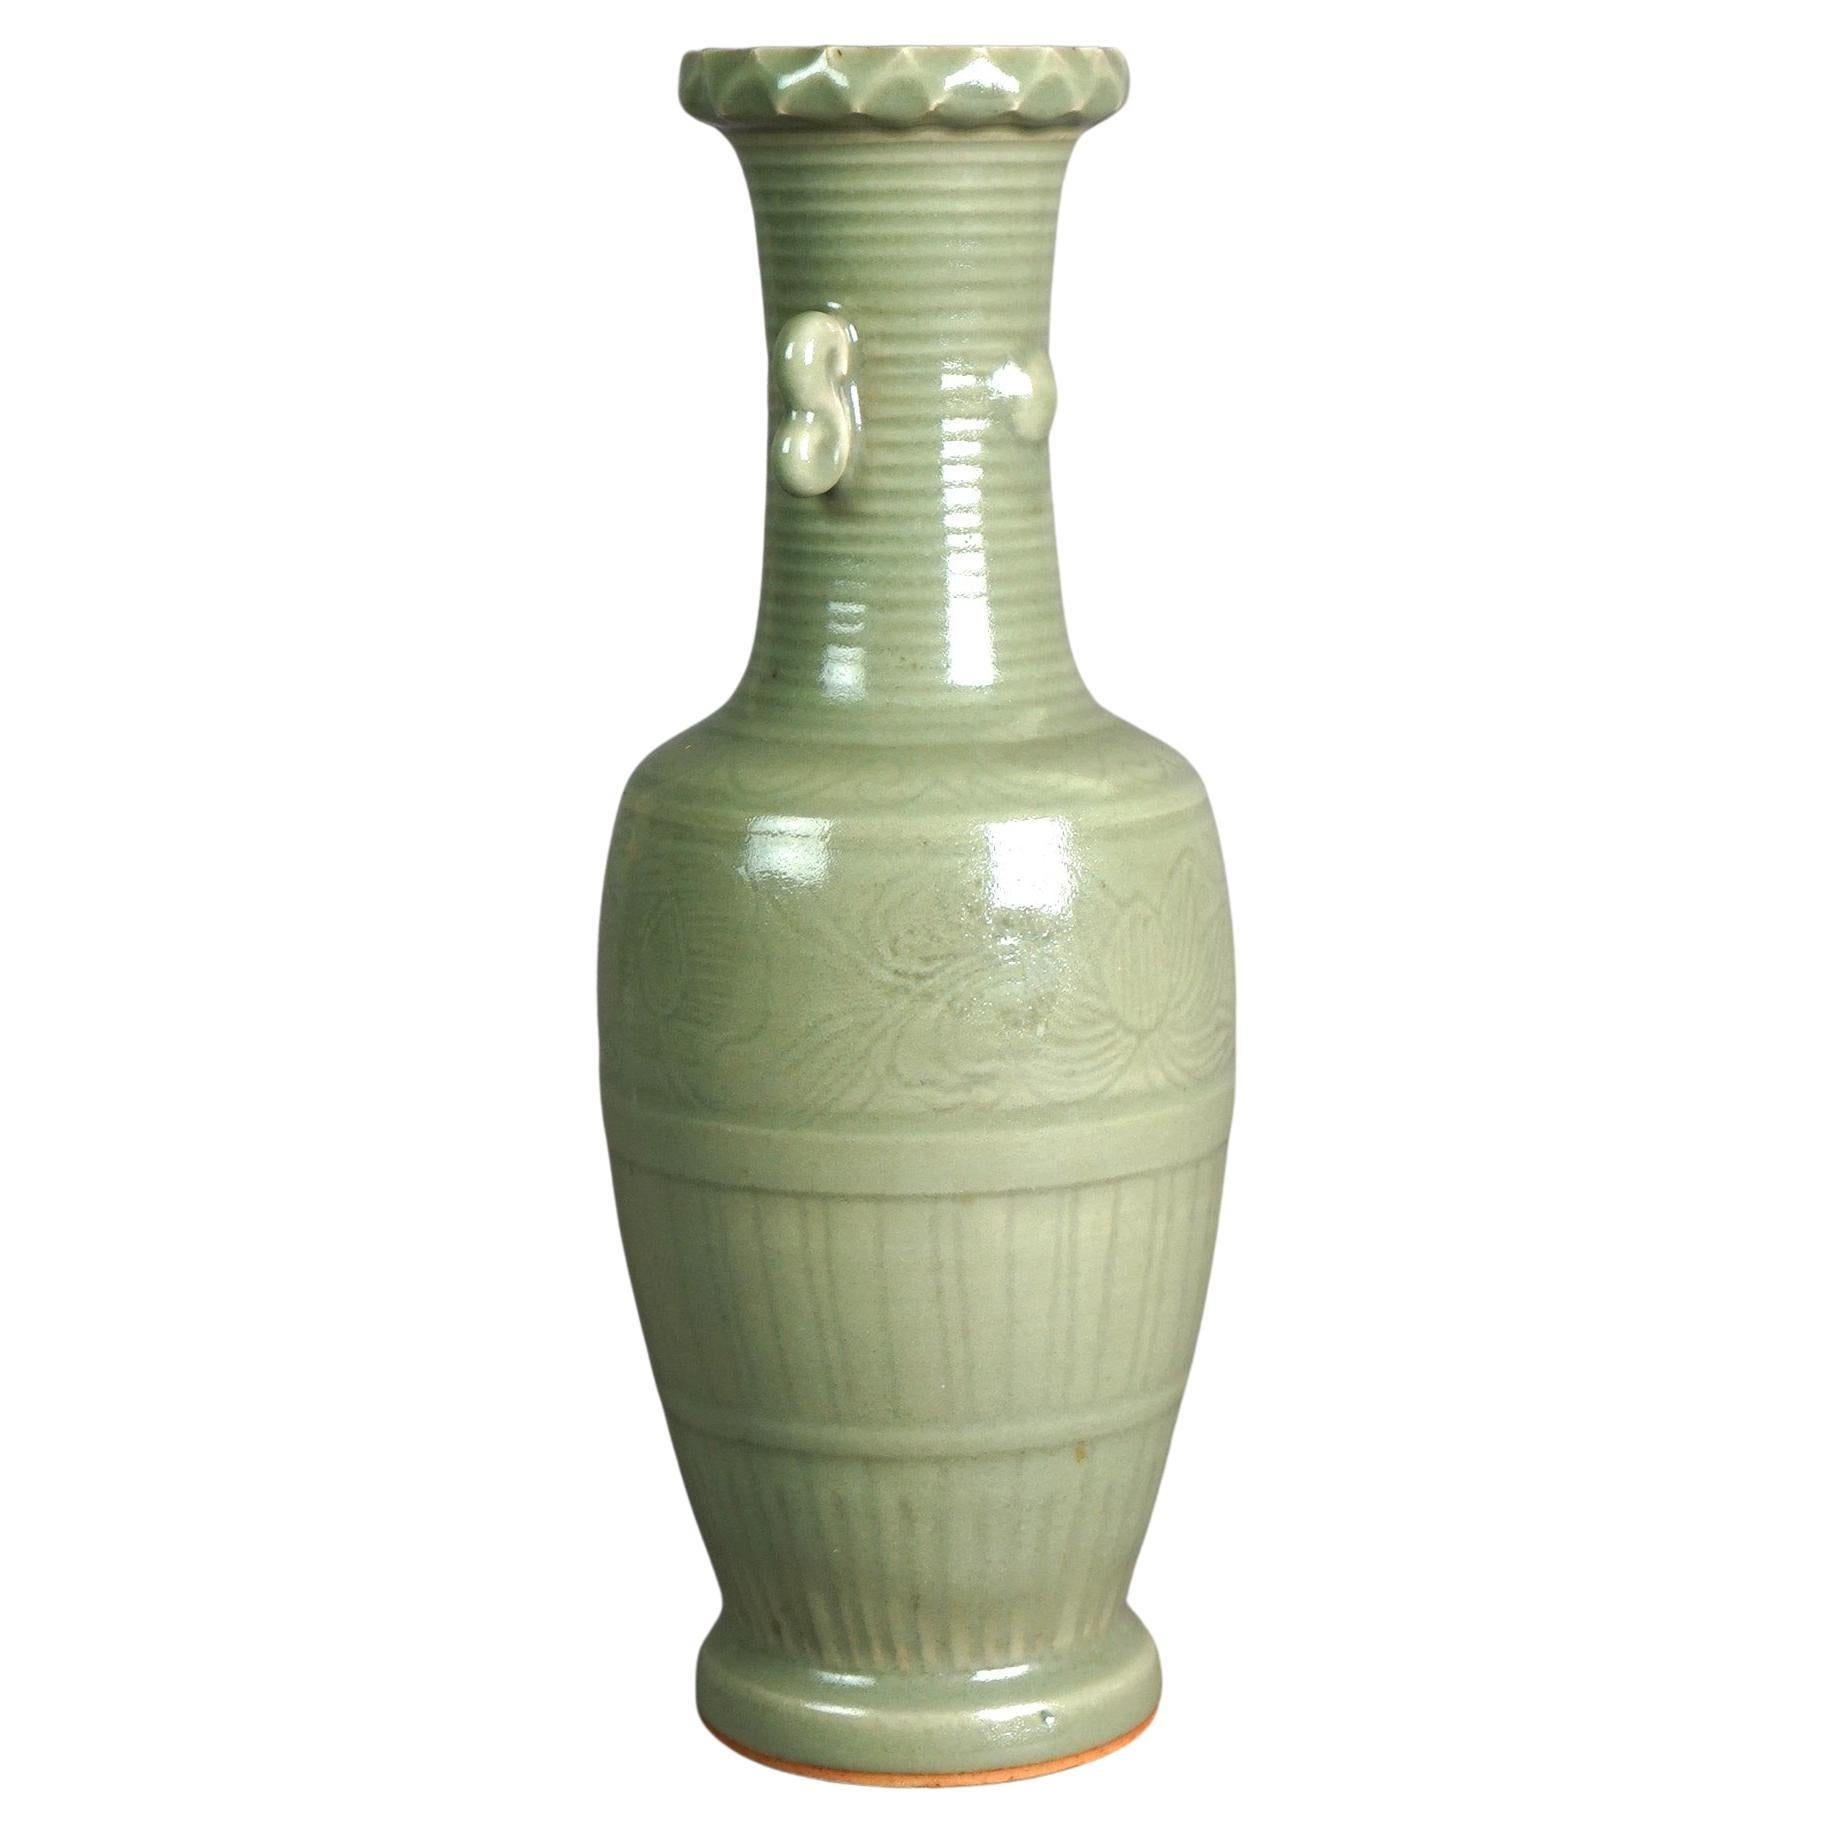 Antique Chinese Celadon Glazed Art Pottery Vase, c1930